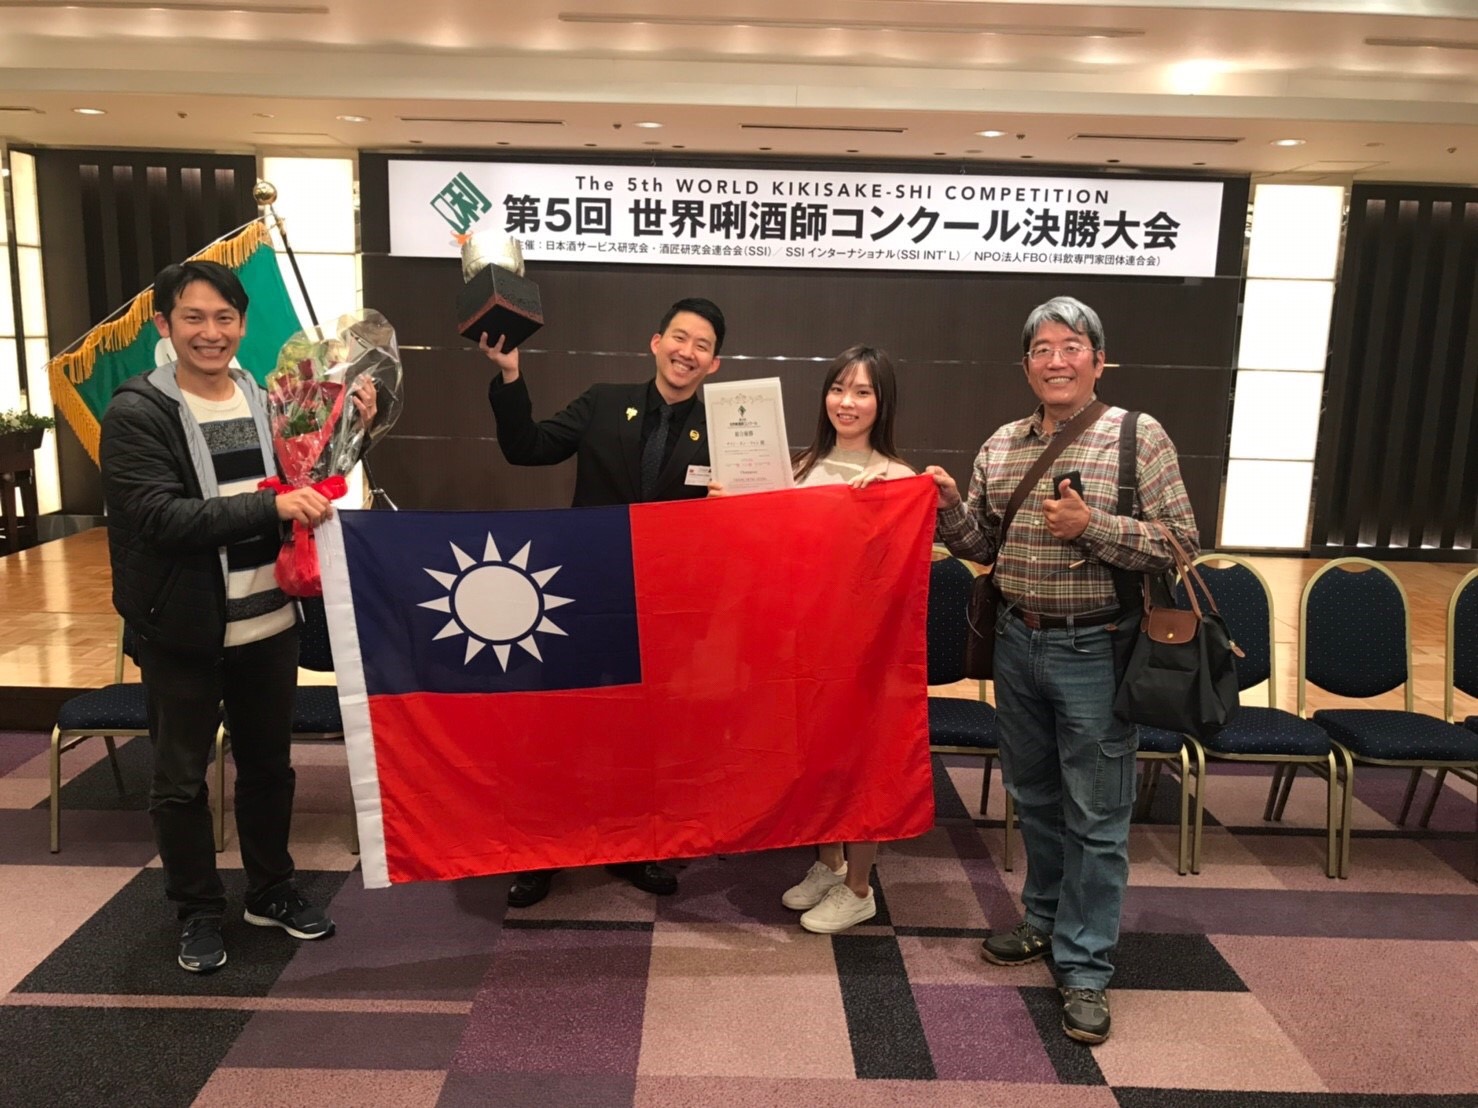 張鴻亮為國爭光 獲2019年日本第５回世界唎酒師大賽優勝